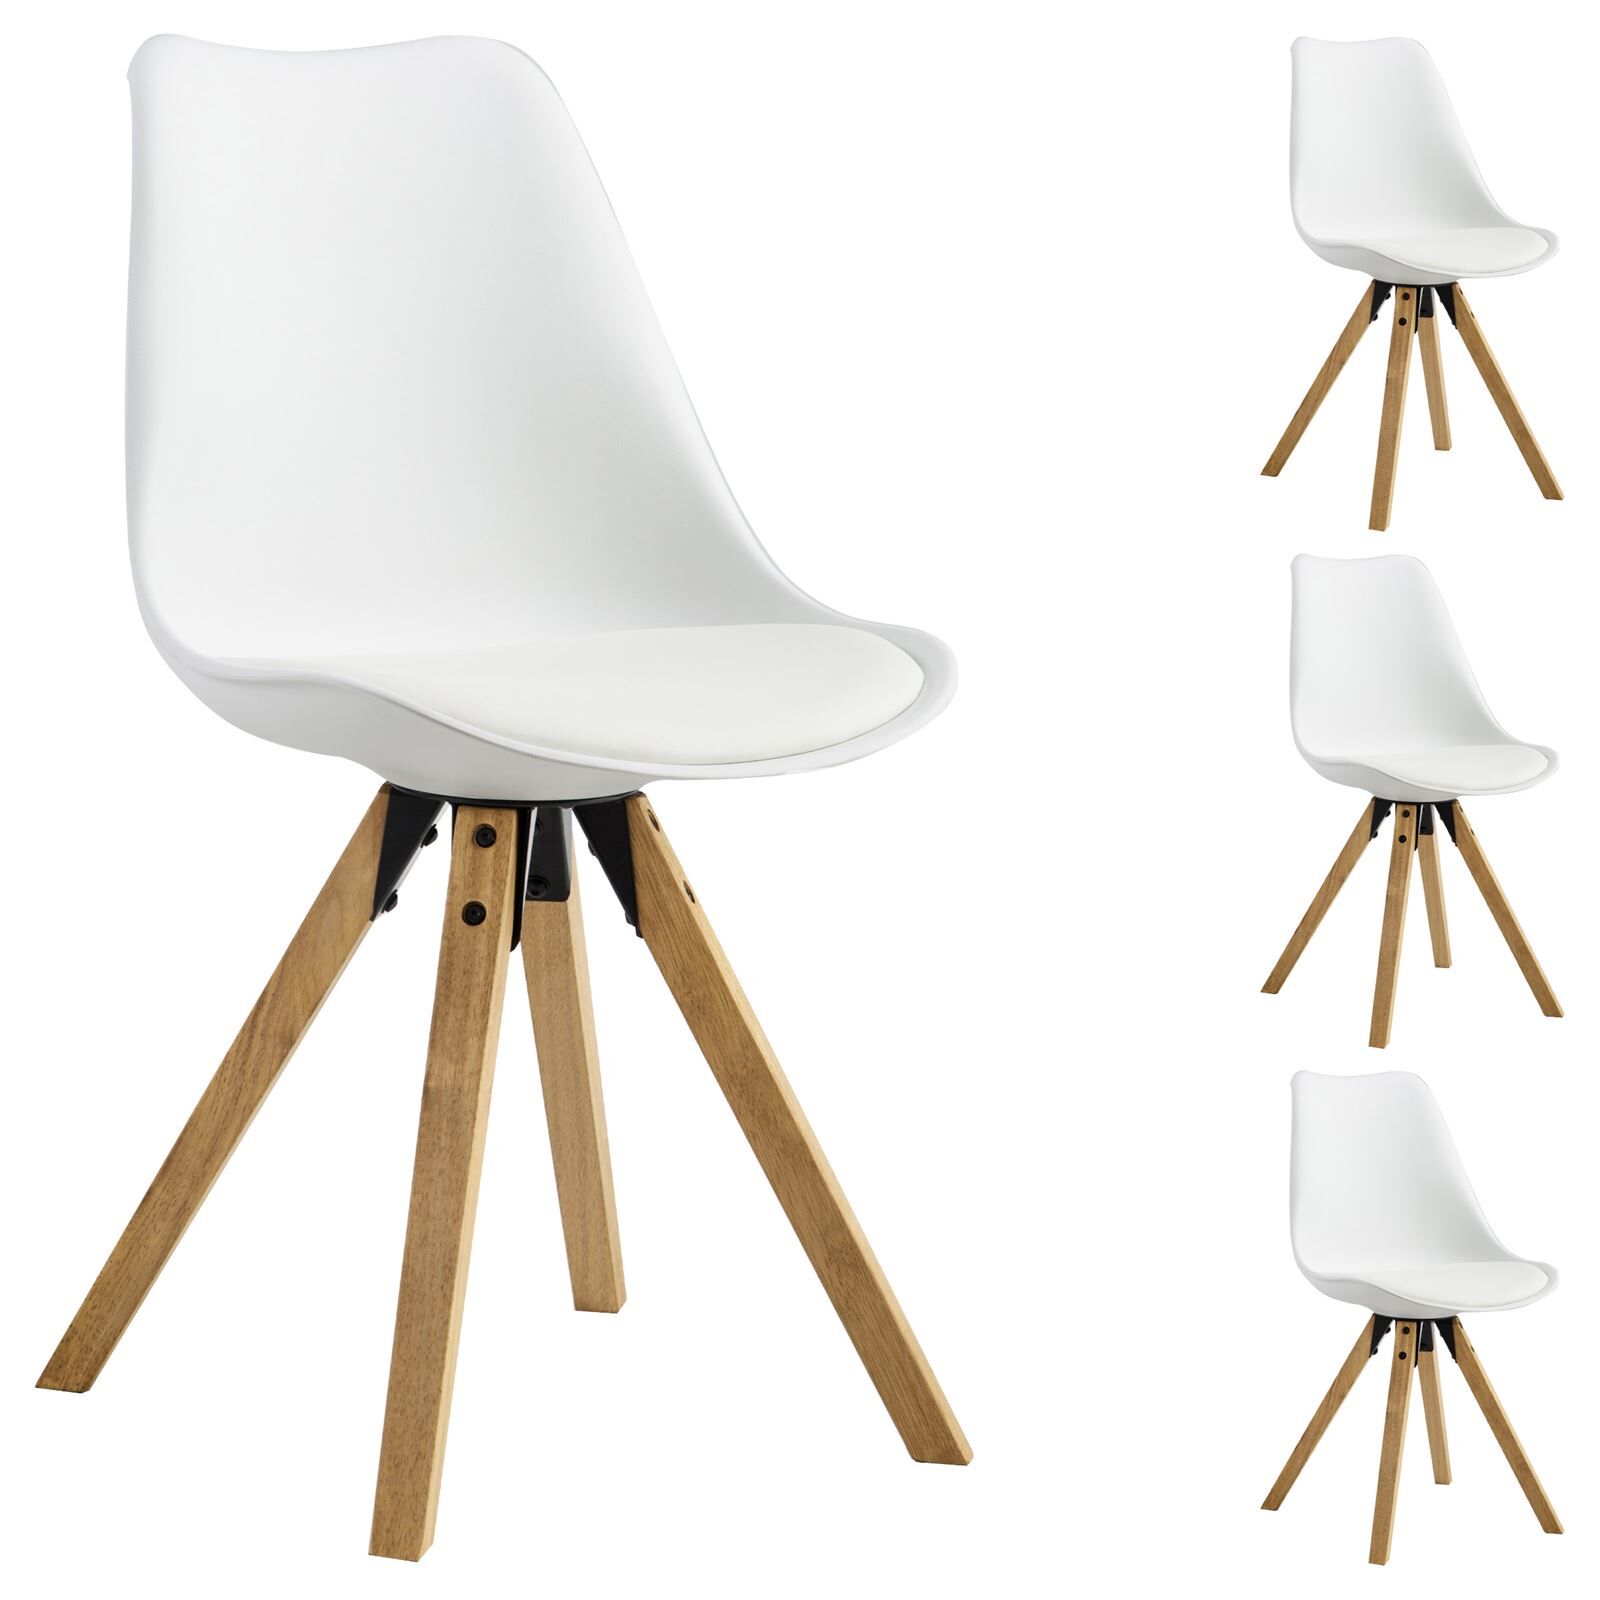 IDIMEX Lot de 4 chaises scandinaves TYSON, en synthétique blanc